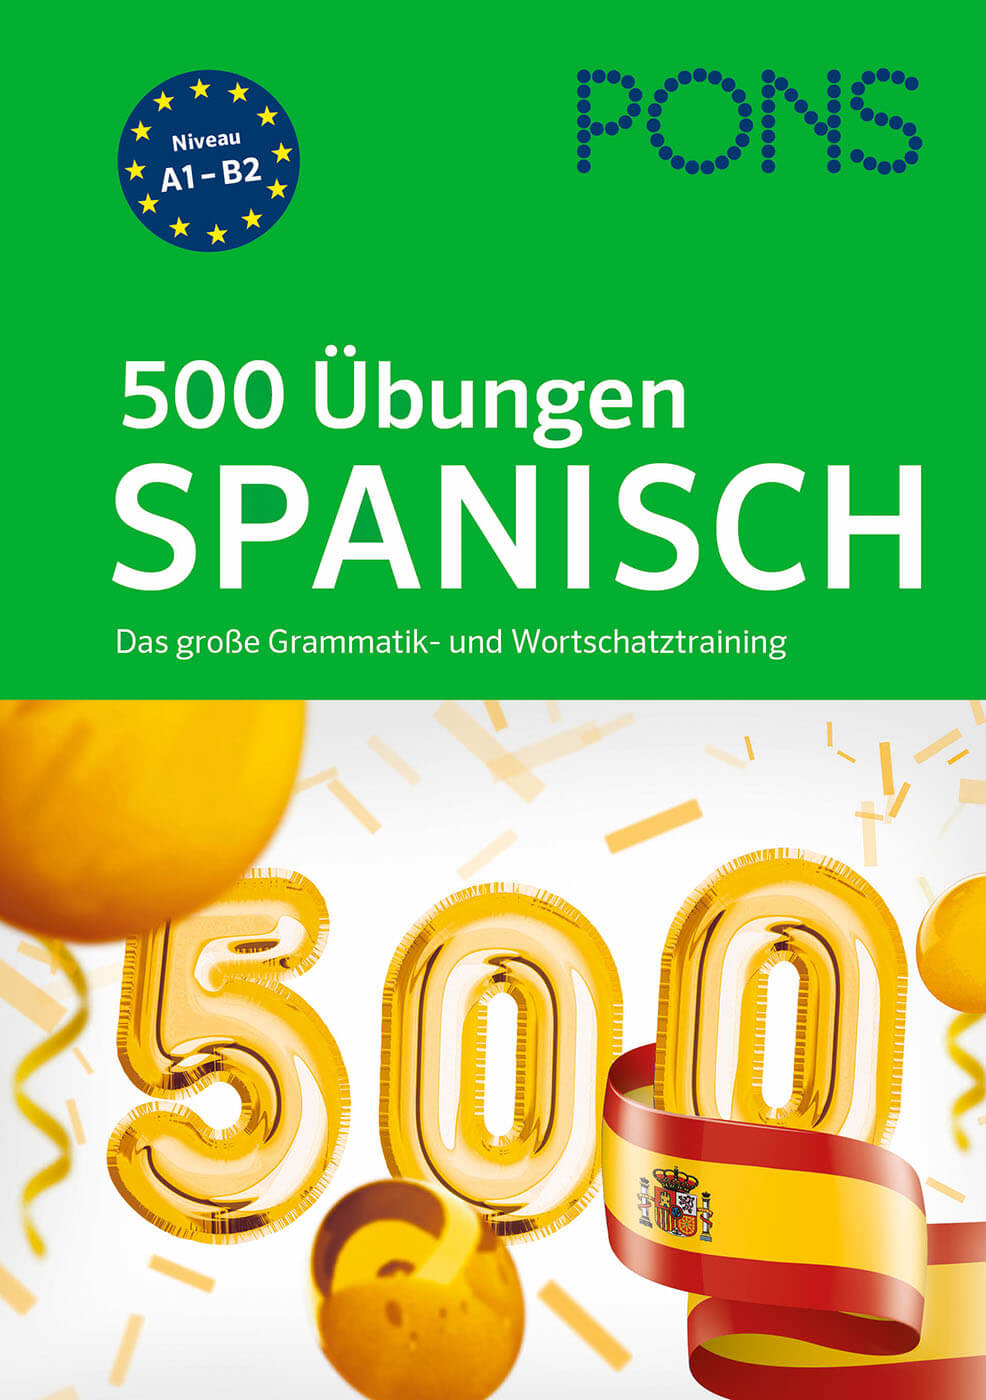 Vorschau: PONS 500 Übungen Spanisch